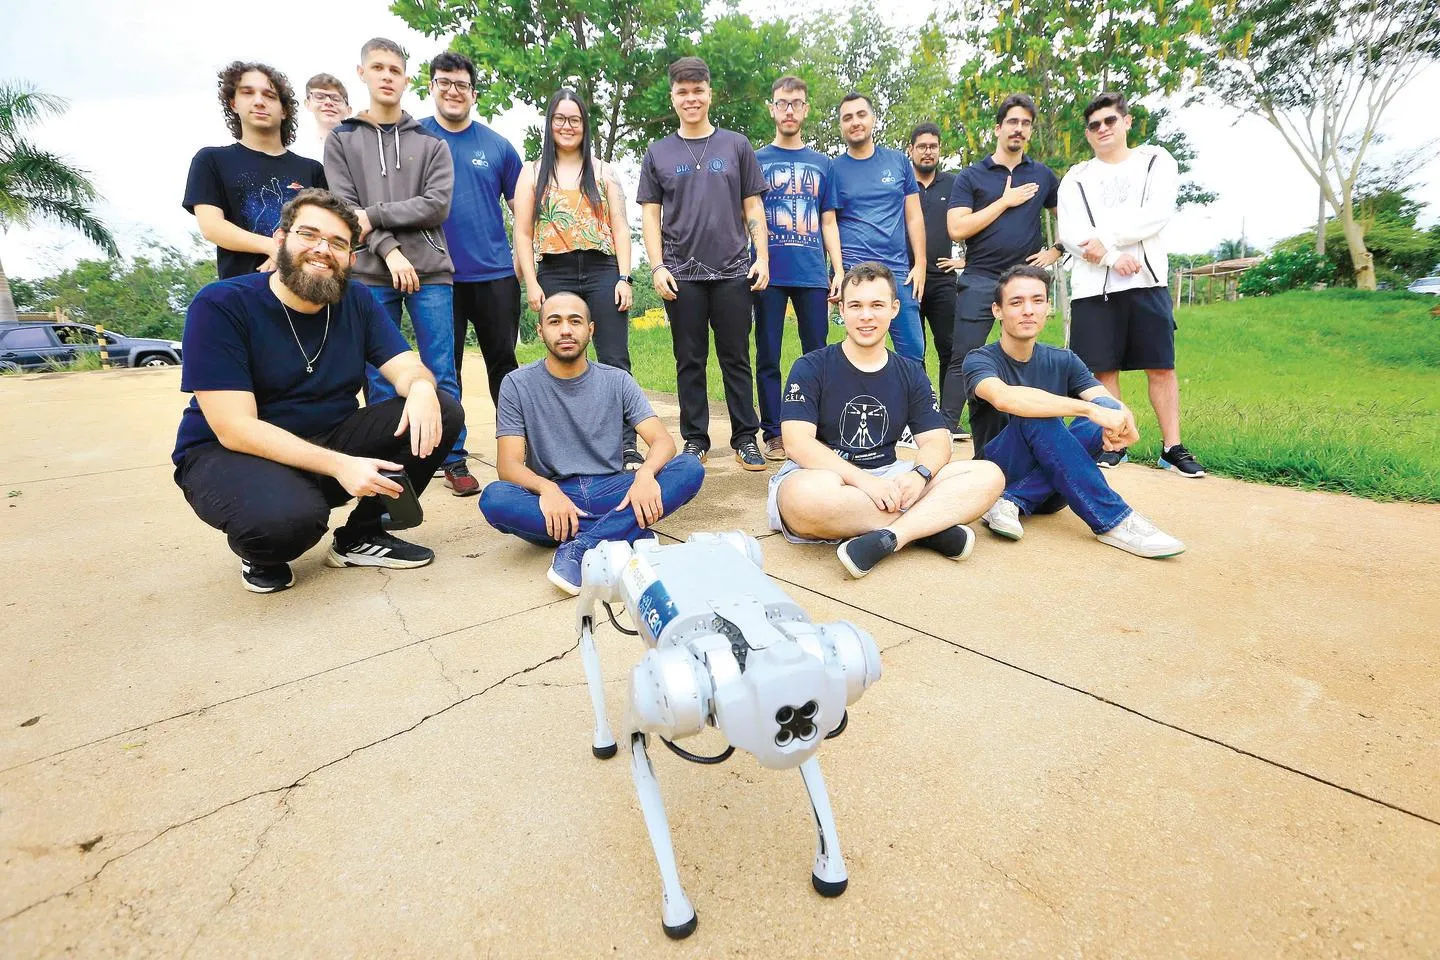 Primeira turma de Inteligência Artificial se forma em Goiânia